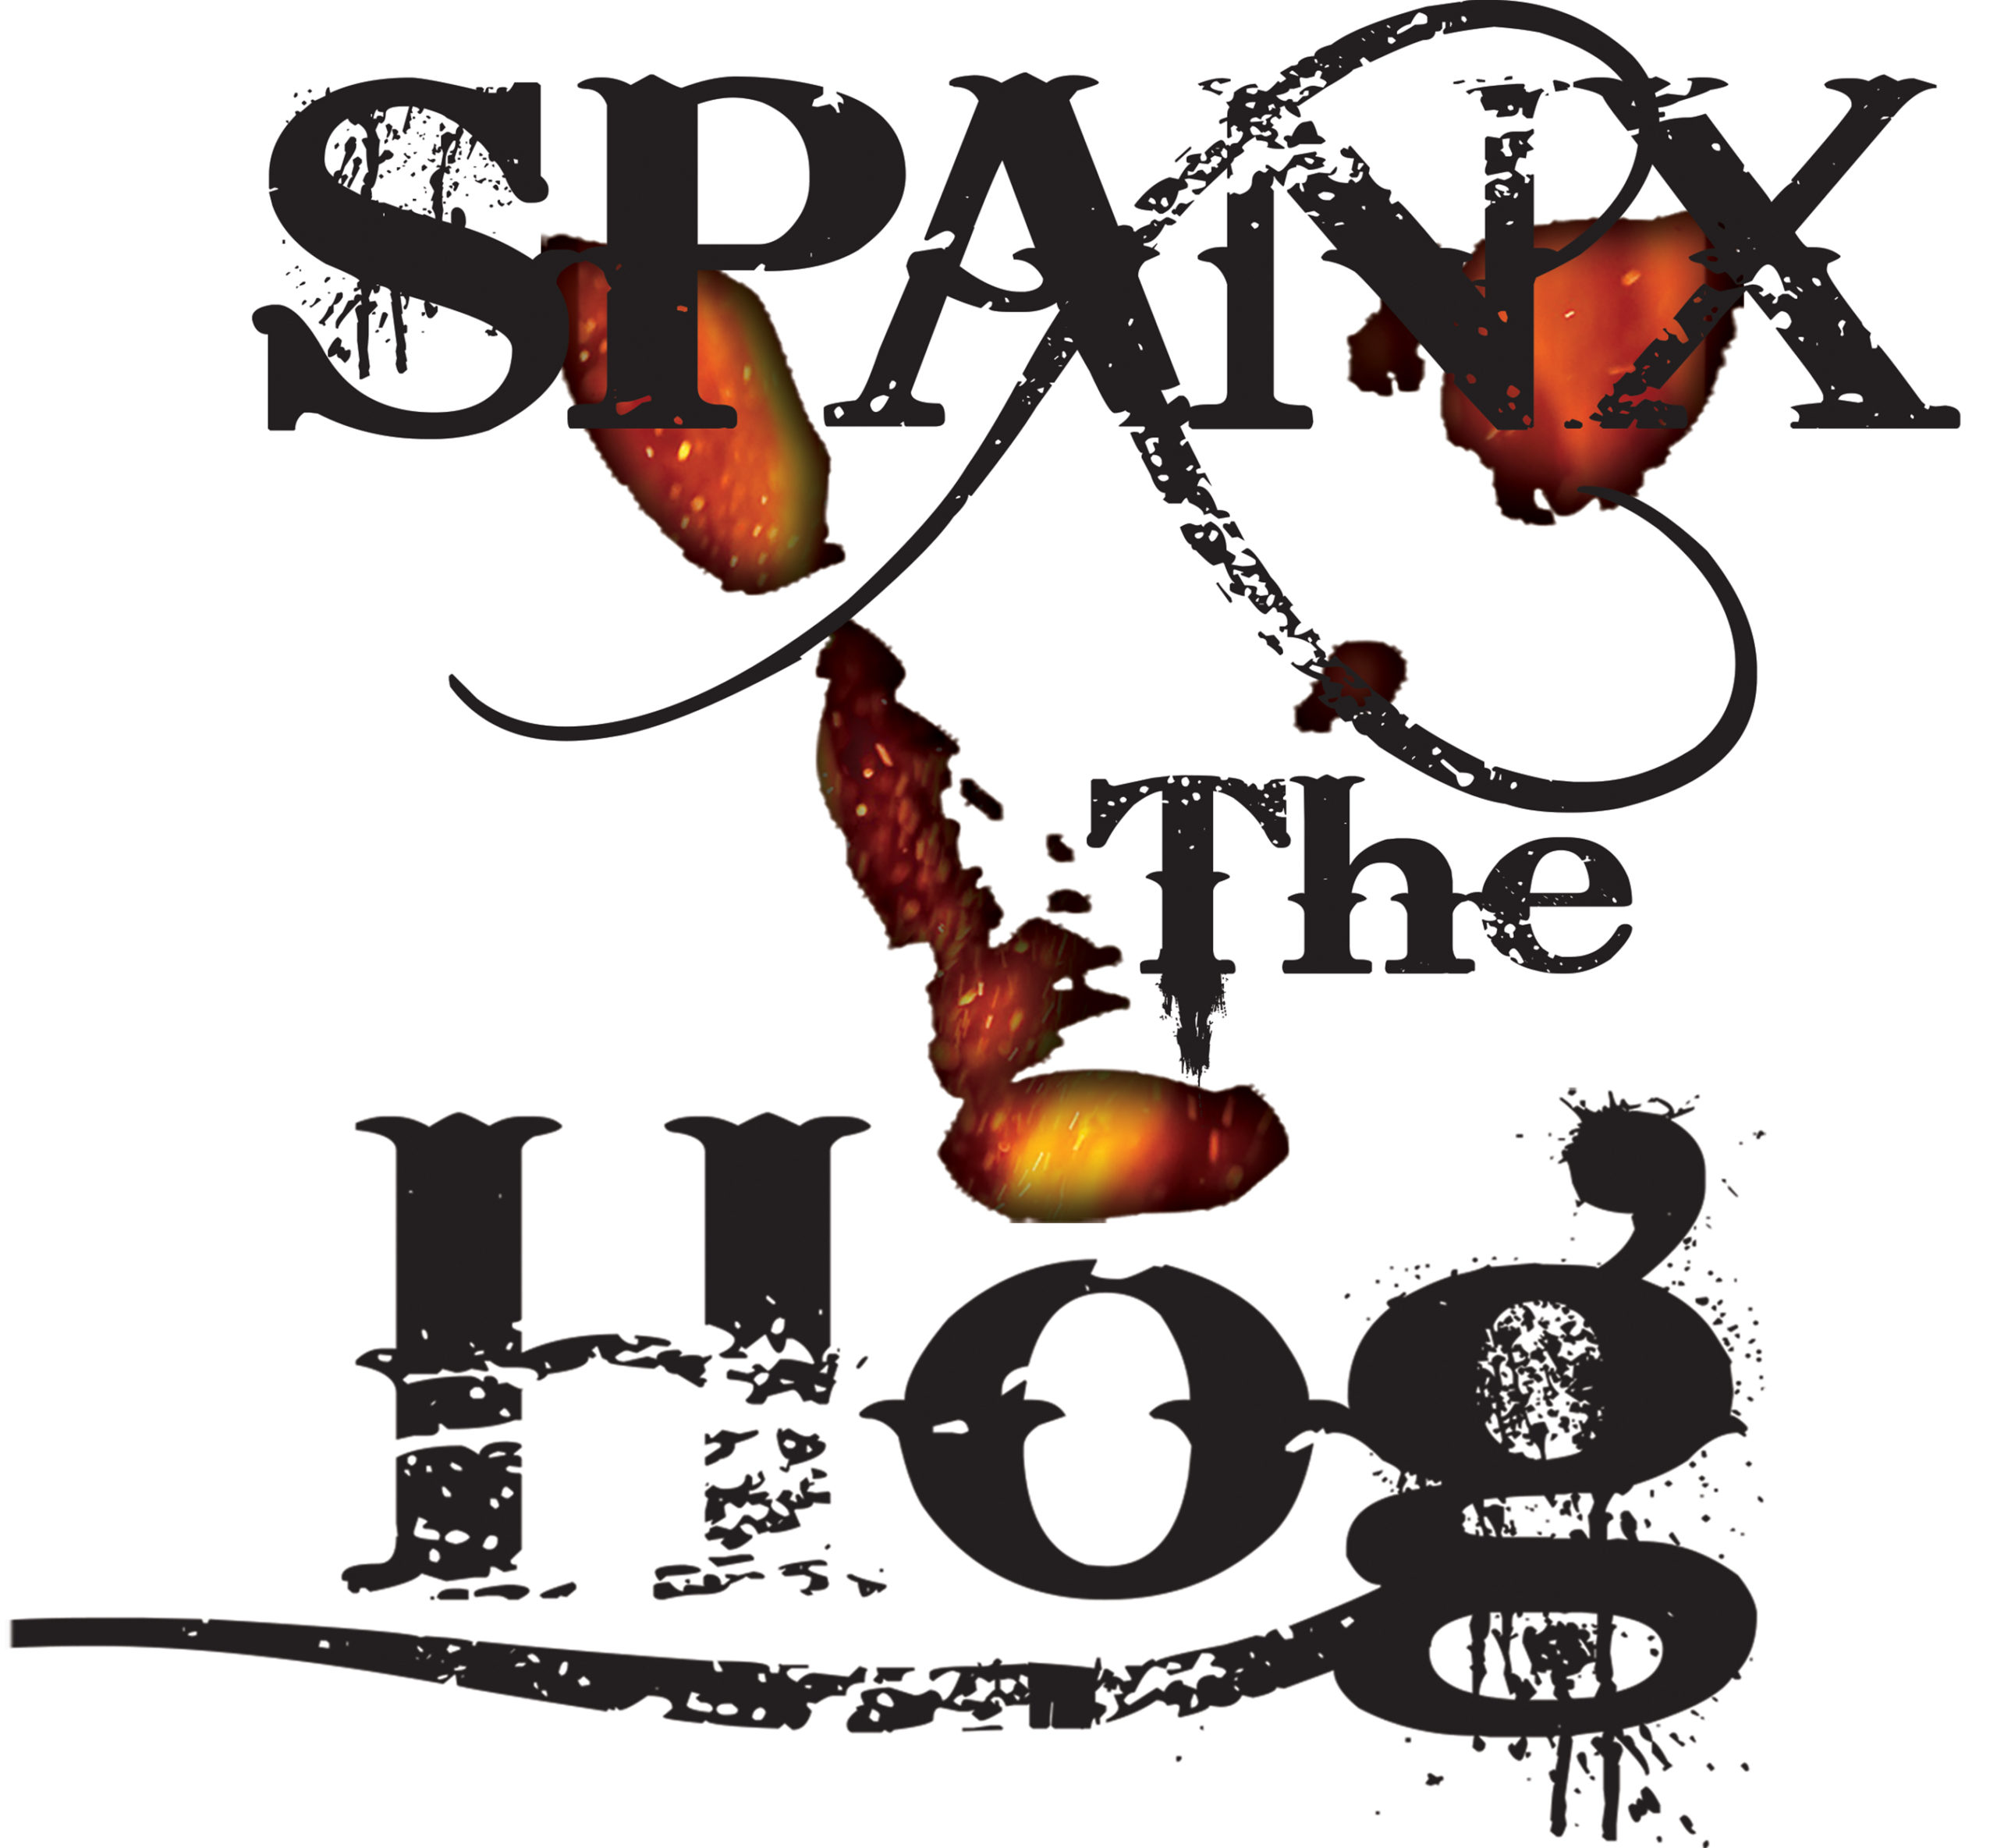 Spanx the hog